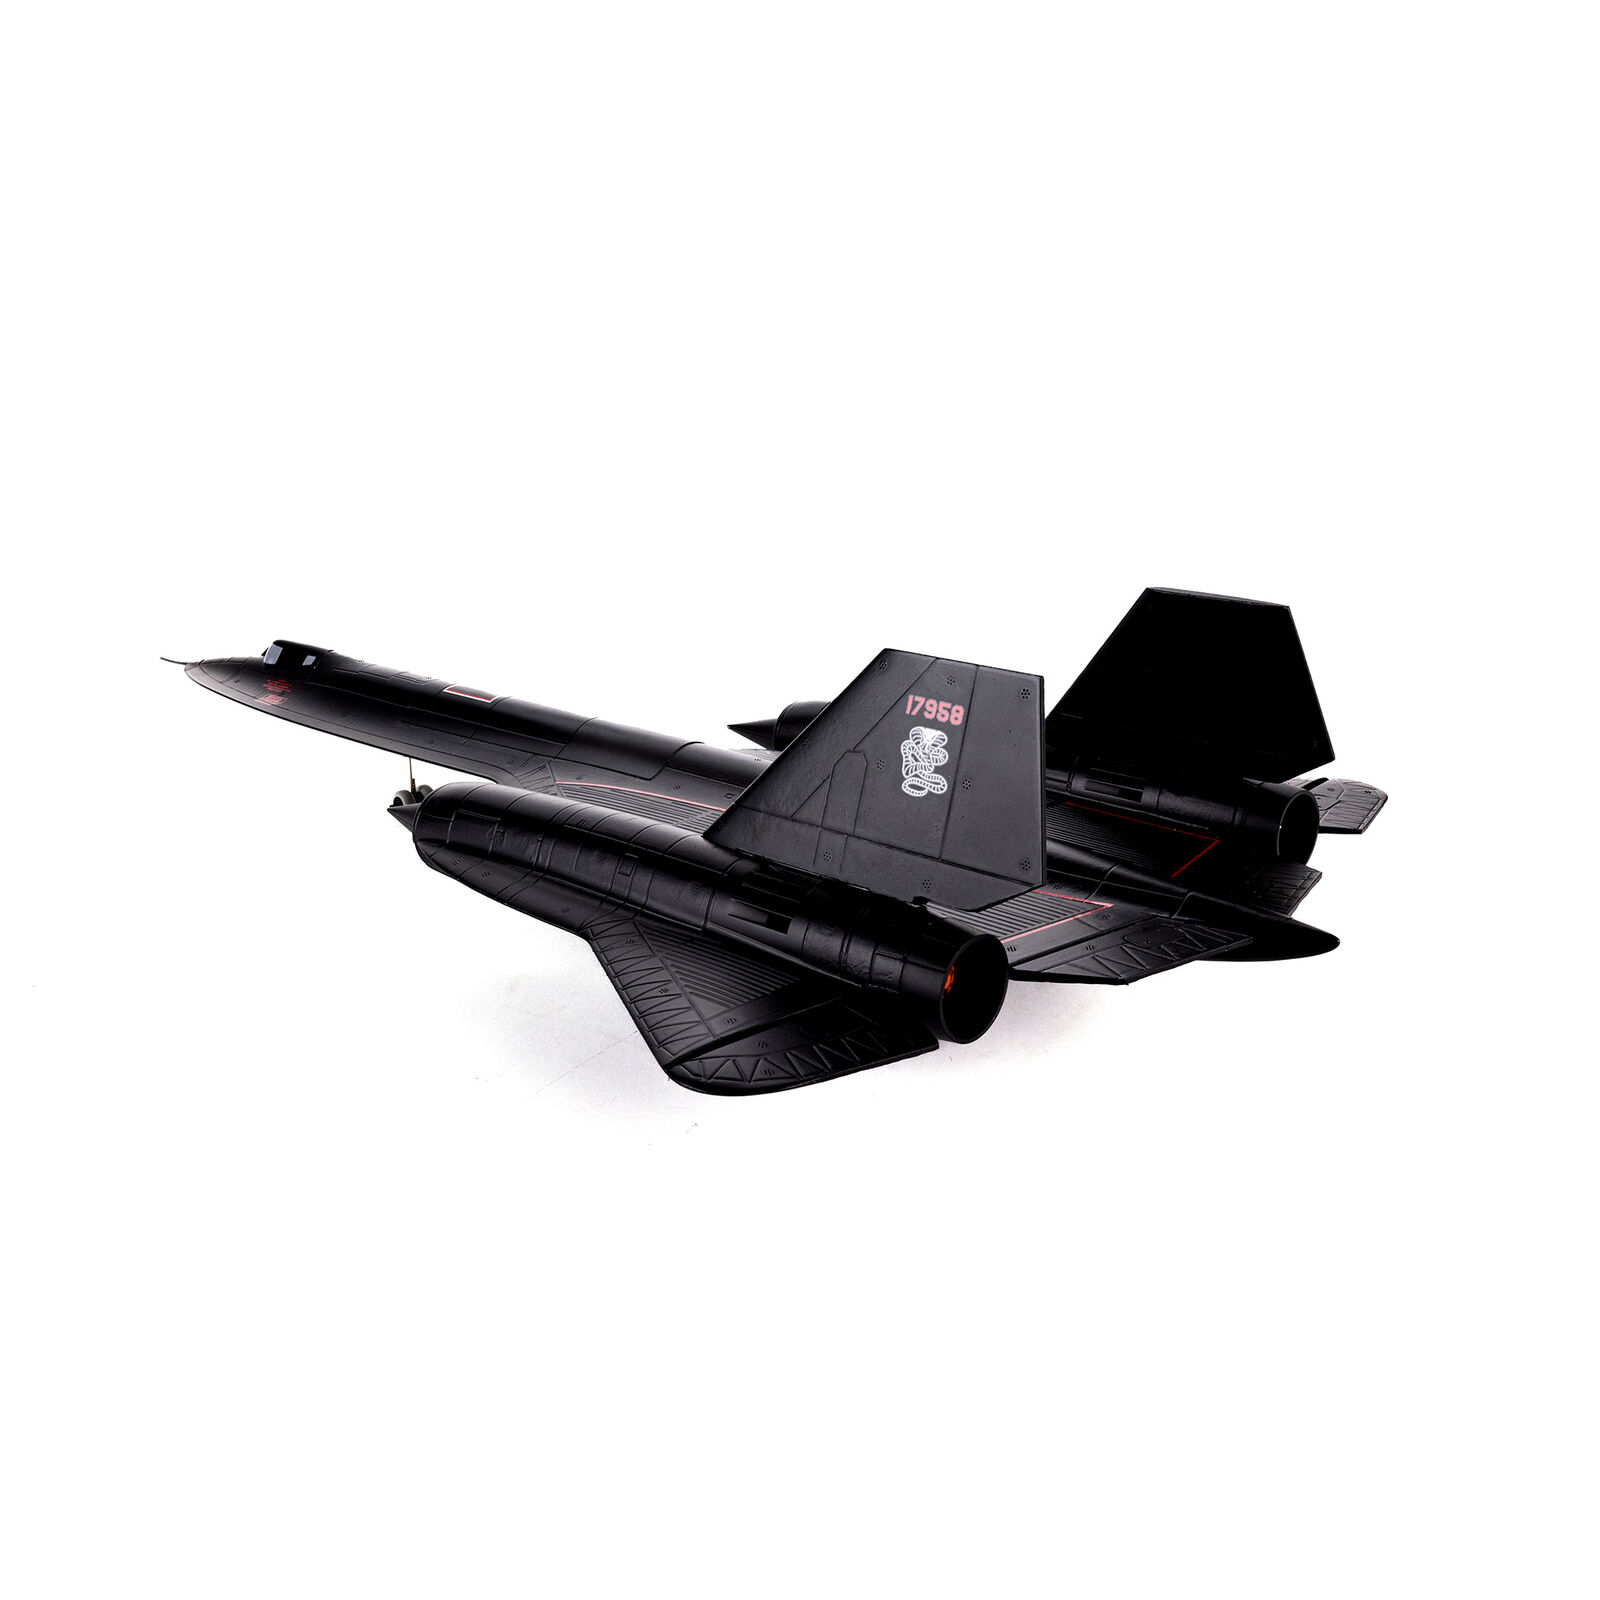 SR-71 Blackbird E-flite